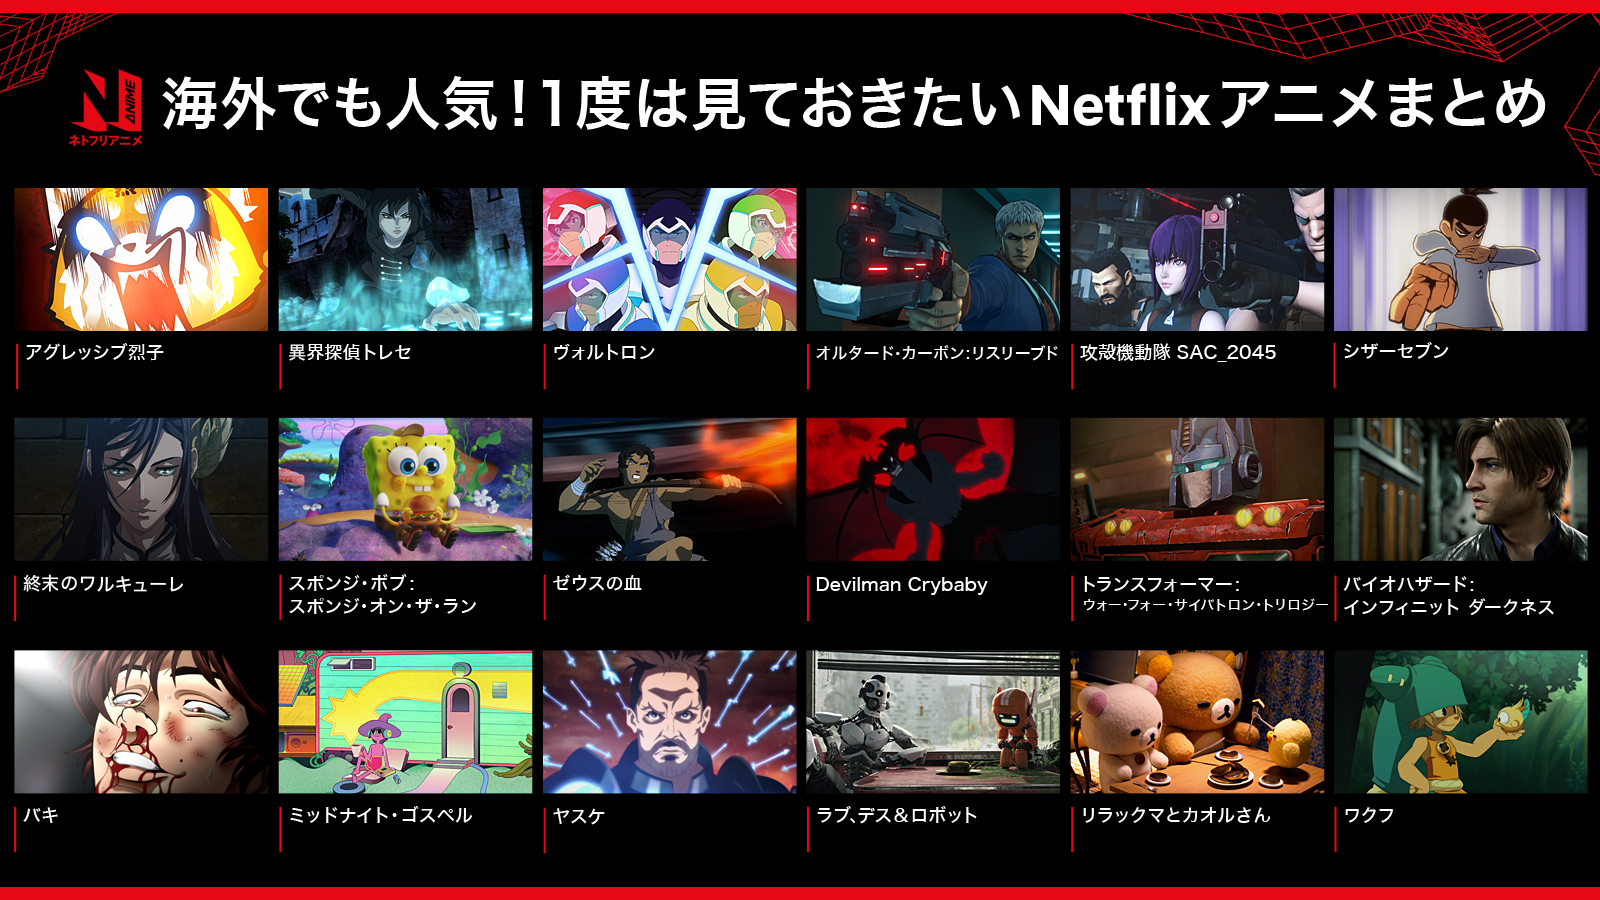 Netflix Japan Anime 海外でも人気の ネトフリアニメ を 18作品まとめてみました ネトフリアニメ の 世界へ 一緒に飛び込もう 今後の海外アニメーションにも期待 T Co Uxothfghrd Twitter